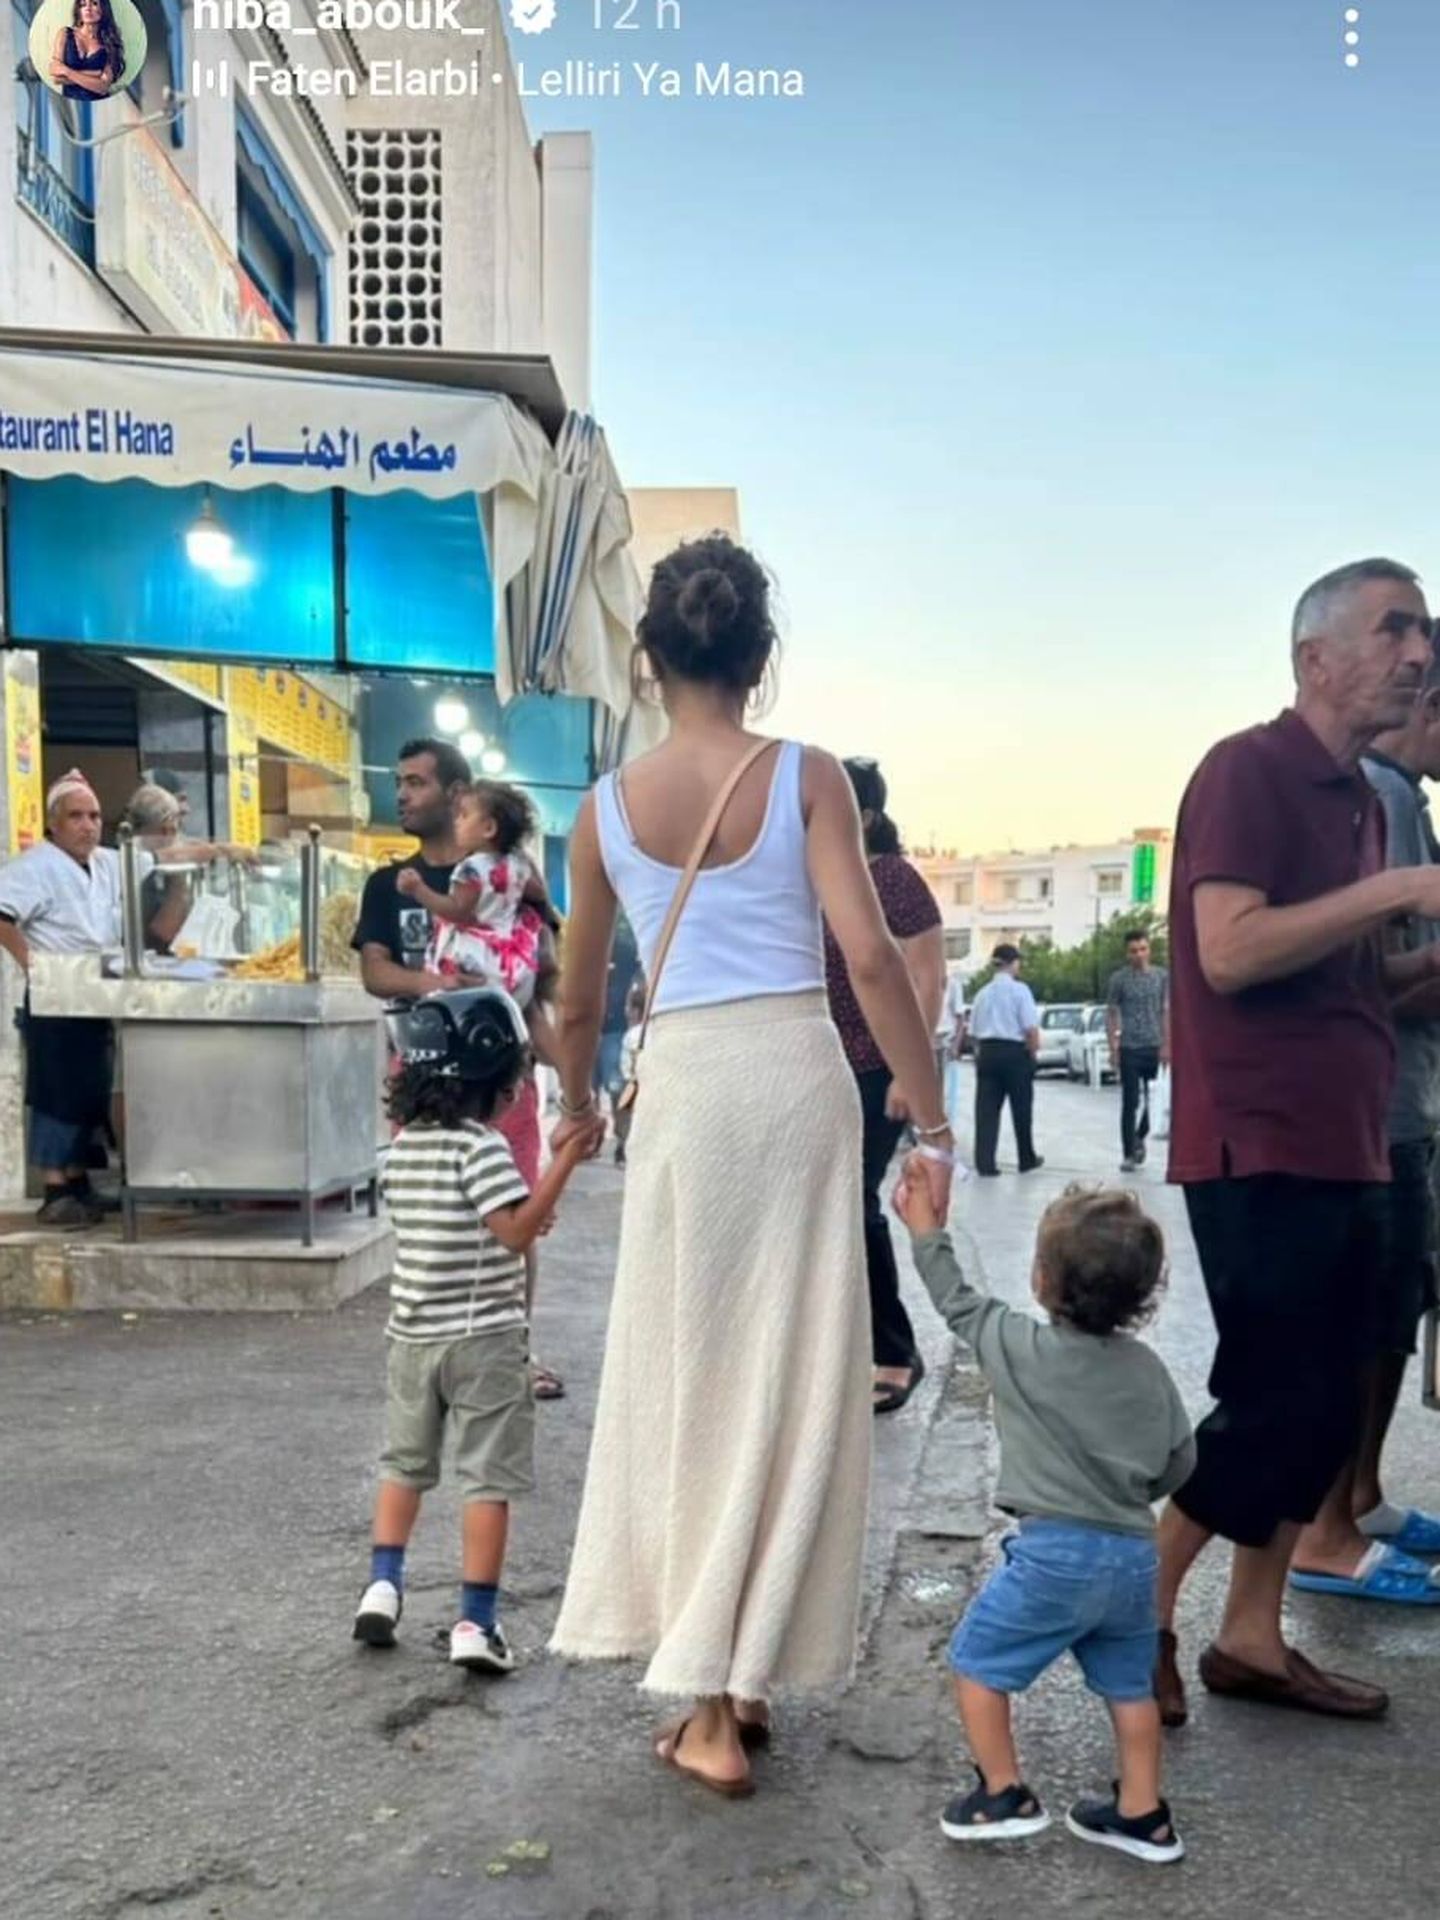 Hiba ha paseado por calles tunecinas con sus hijos. (Instagram/@hiba_abouk_)